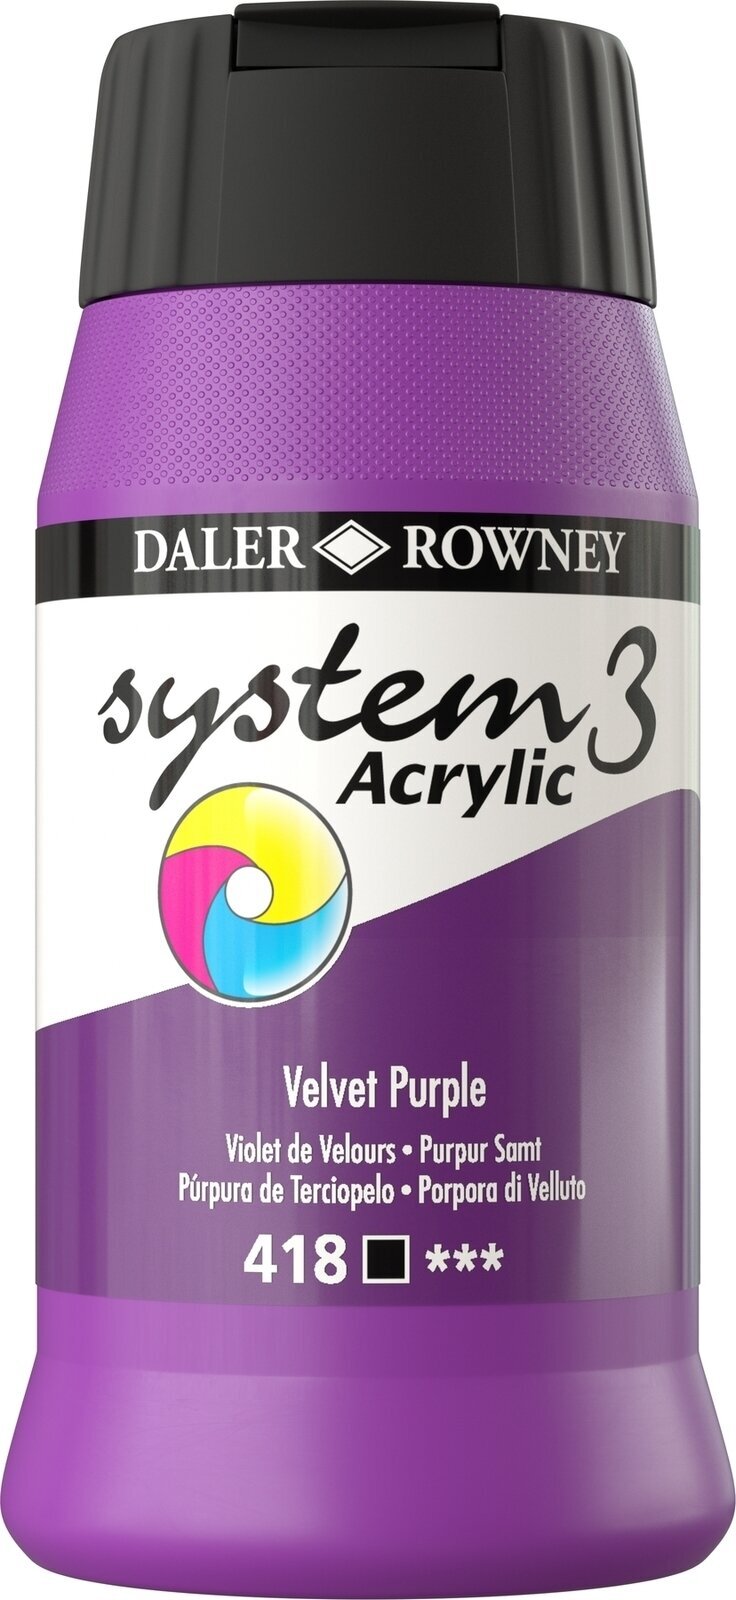 Tinta acrílica Daler Rowney System3 Tinta acrílica Velvet Purple 500 ml 1 un.